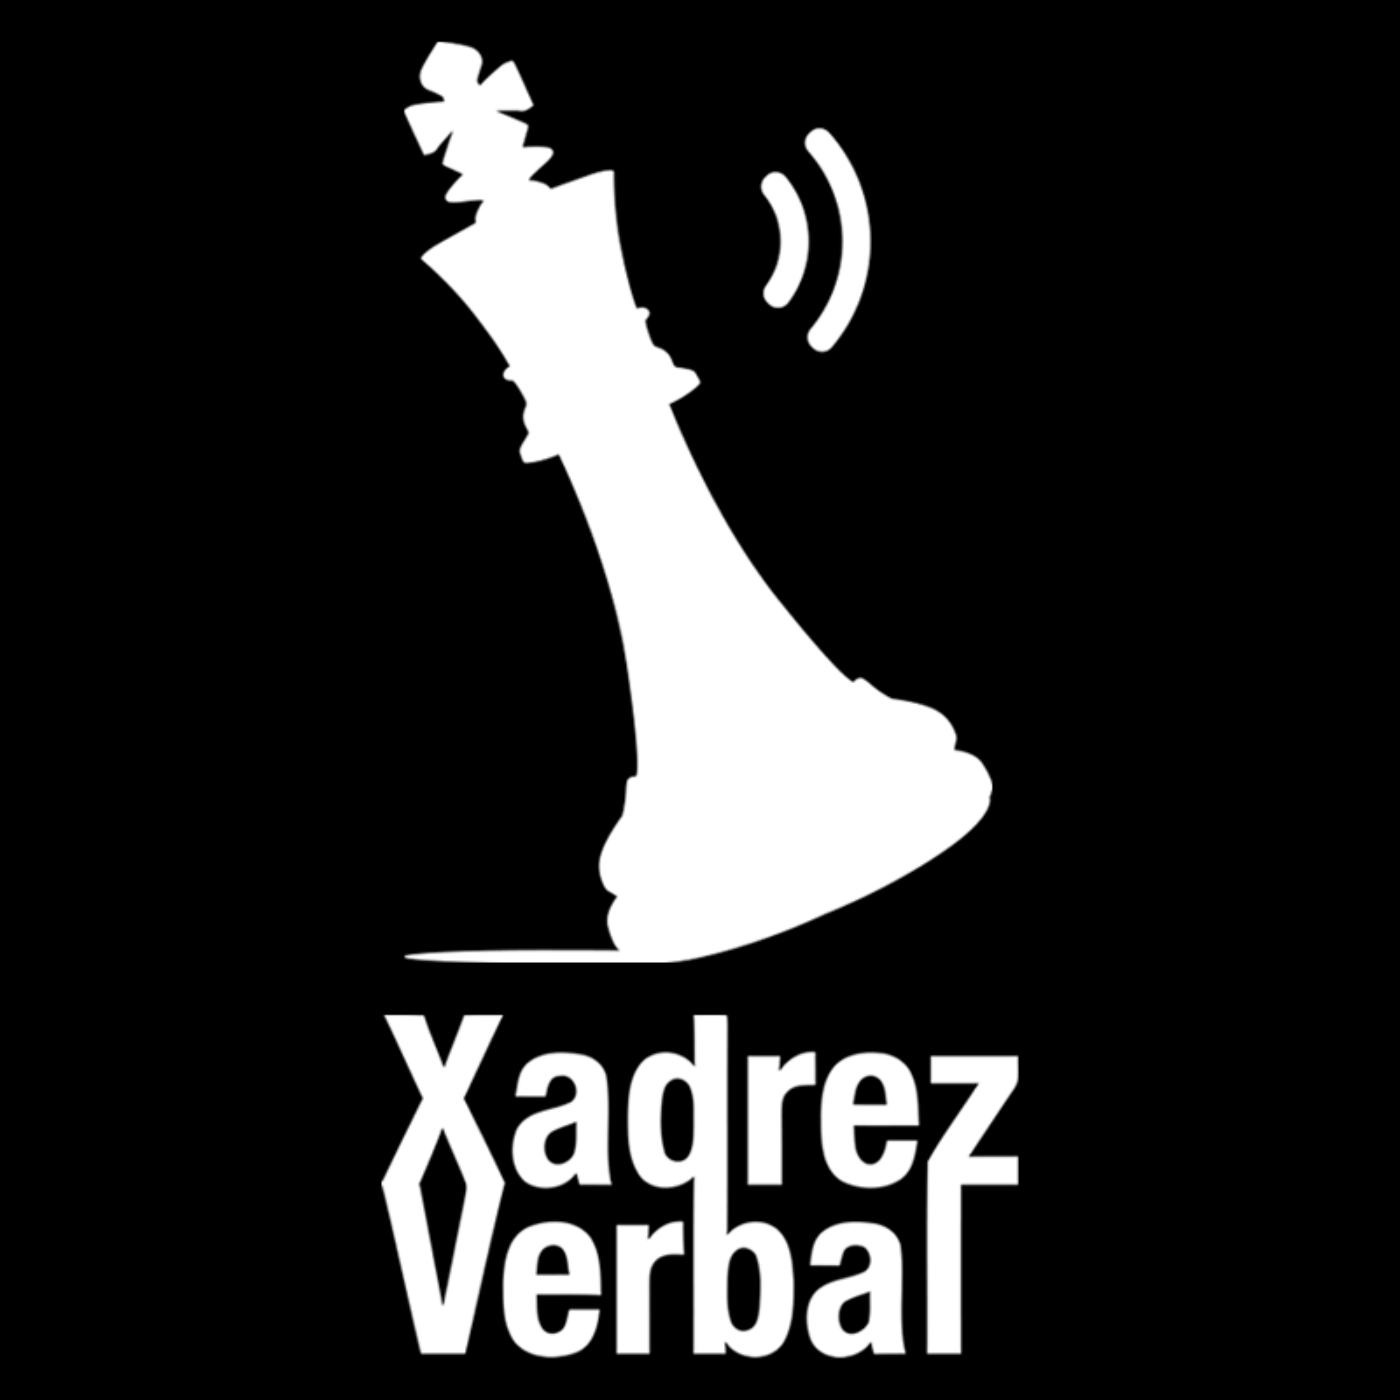 Xadrez Verbal Podcast #230 – Cinco anos de podcast!